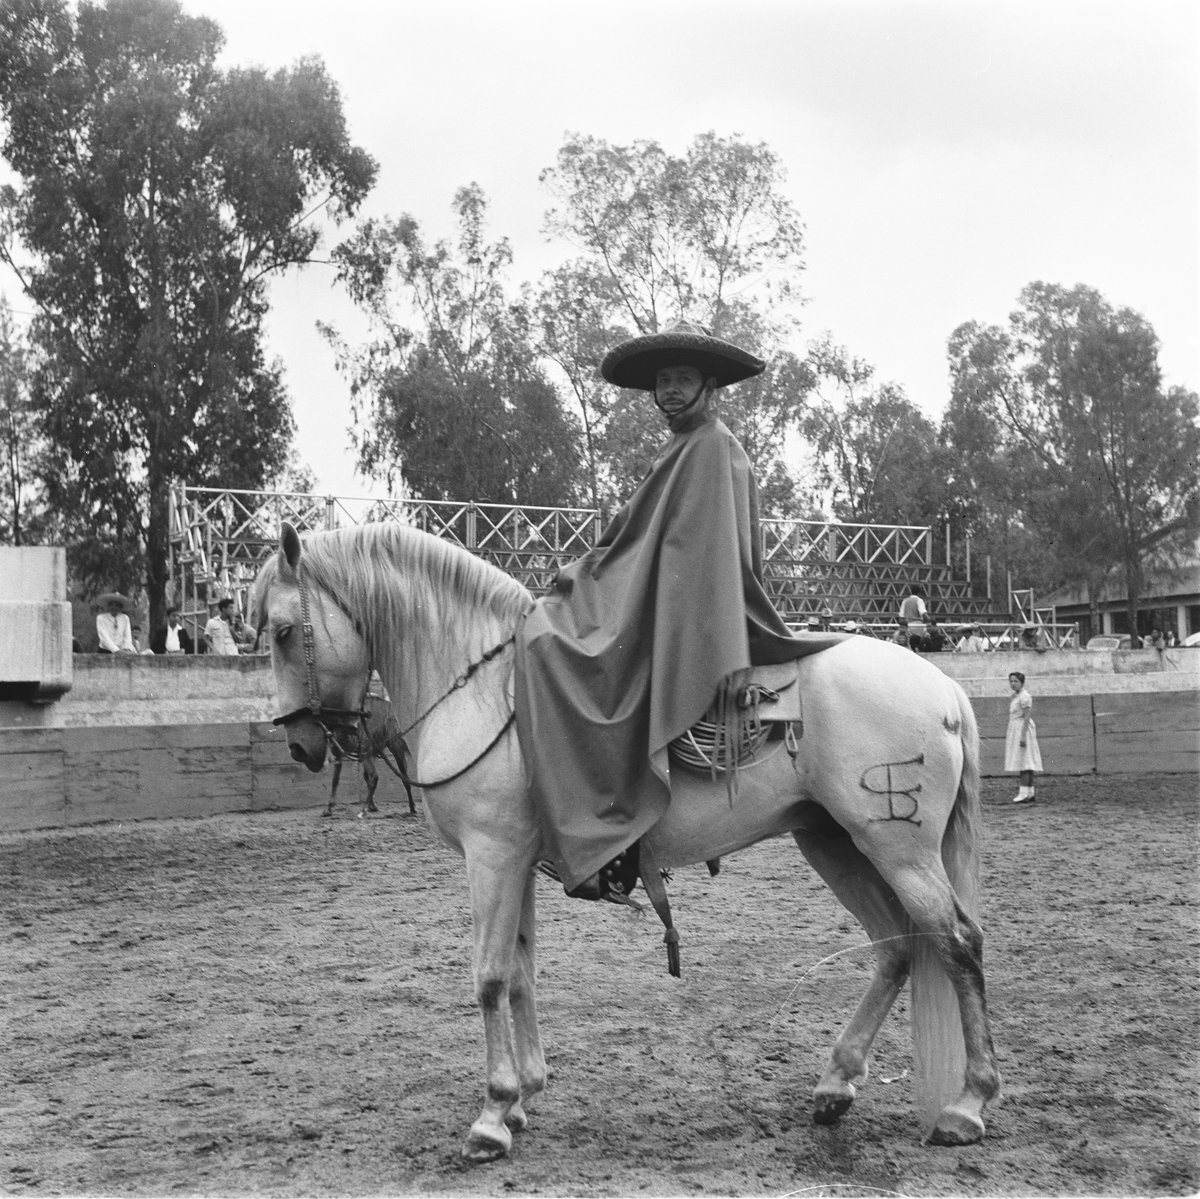 Mann med sombrero og poncho til hest.